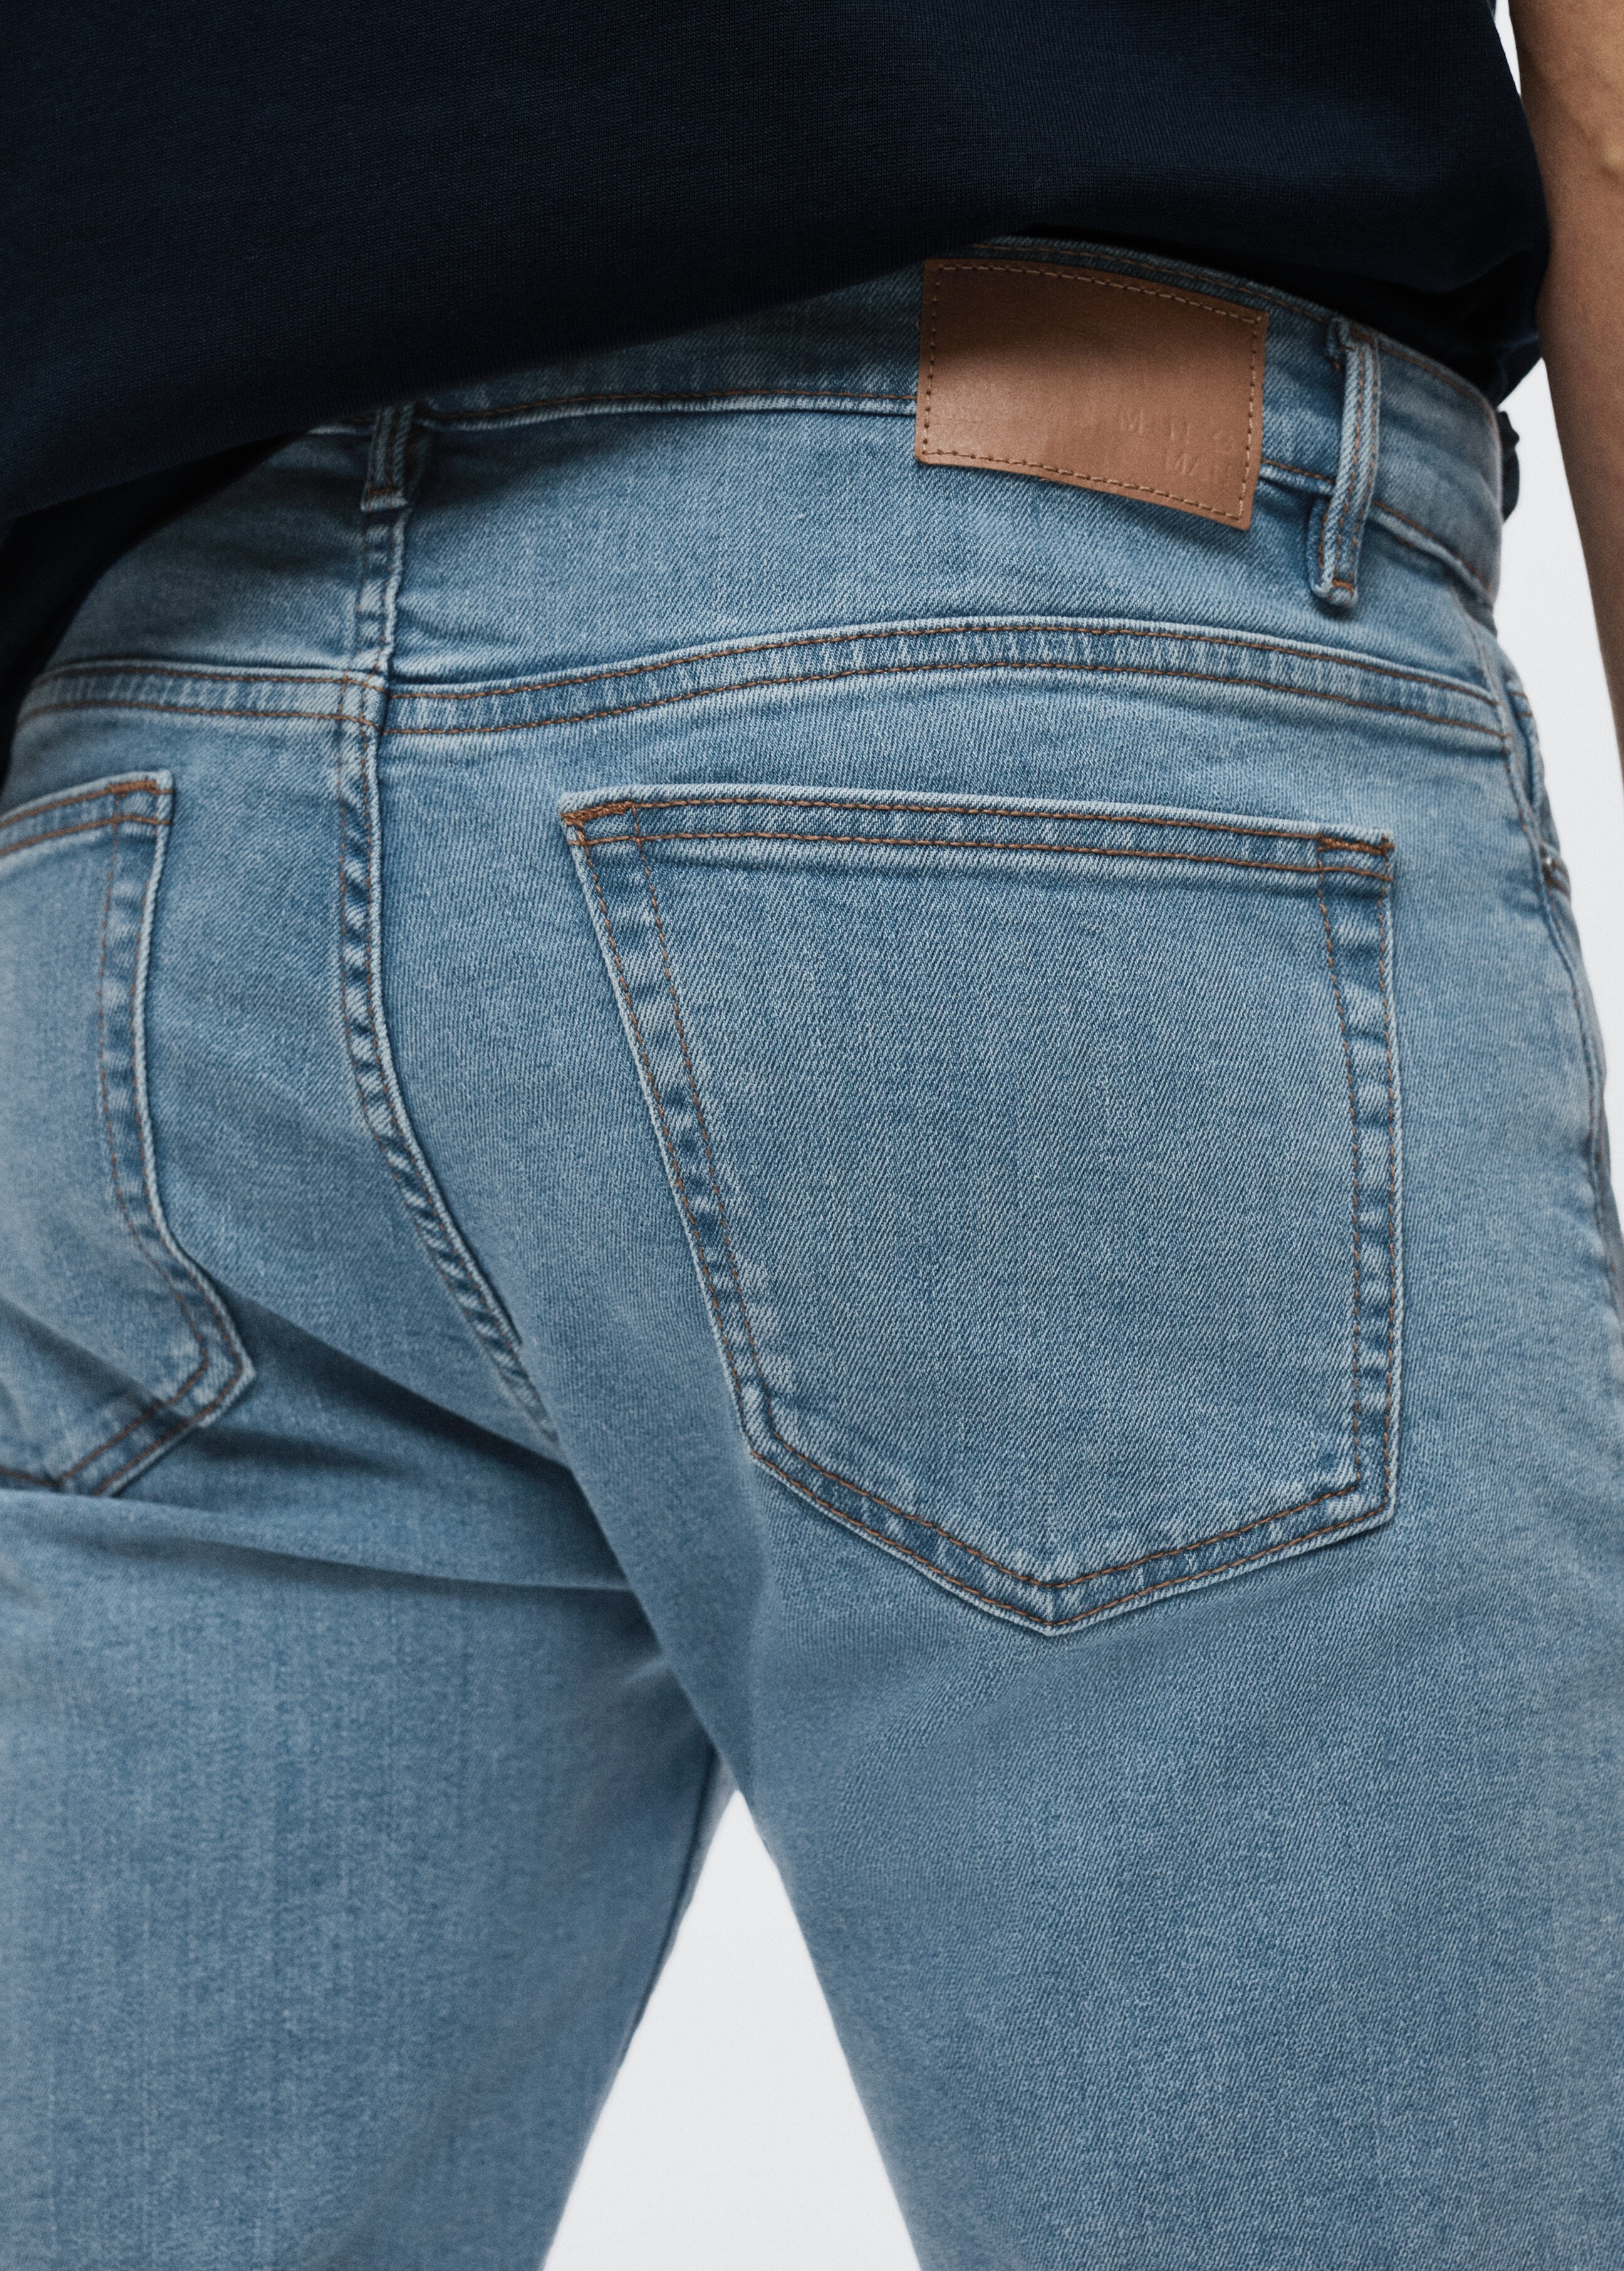 Jeans Jude skinny fit - Detalle del artículo 3